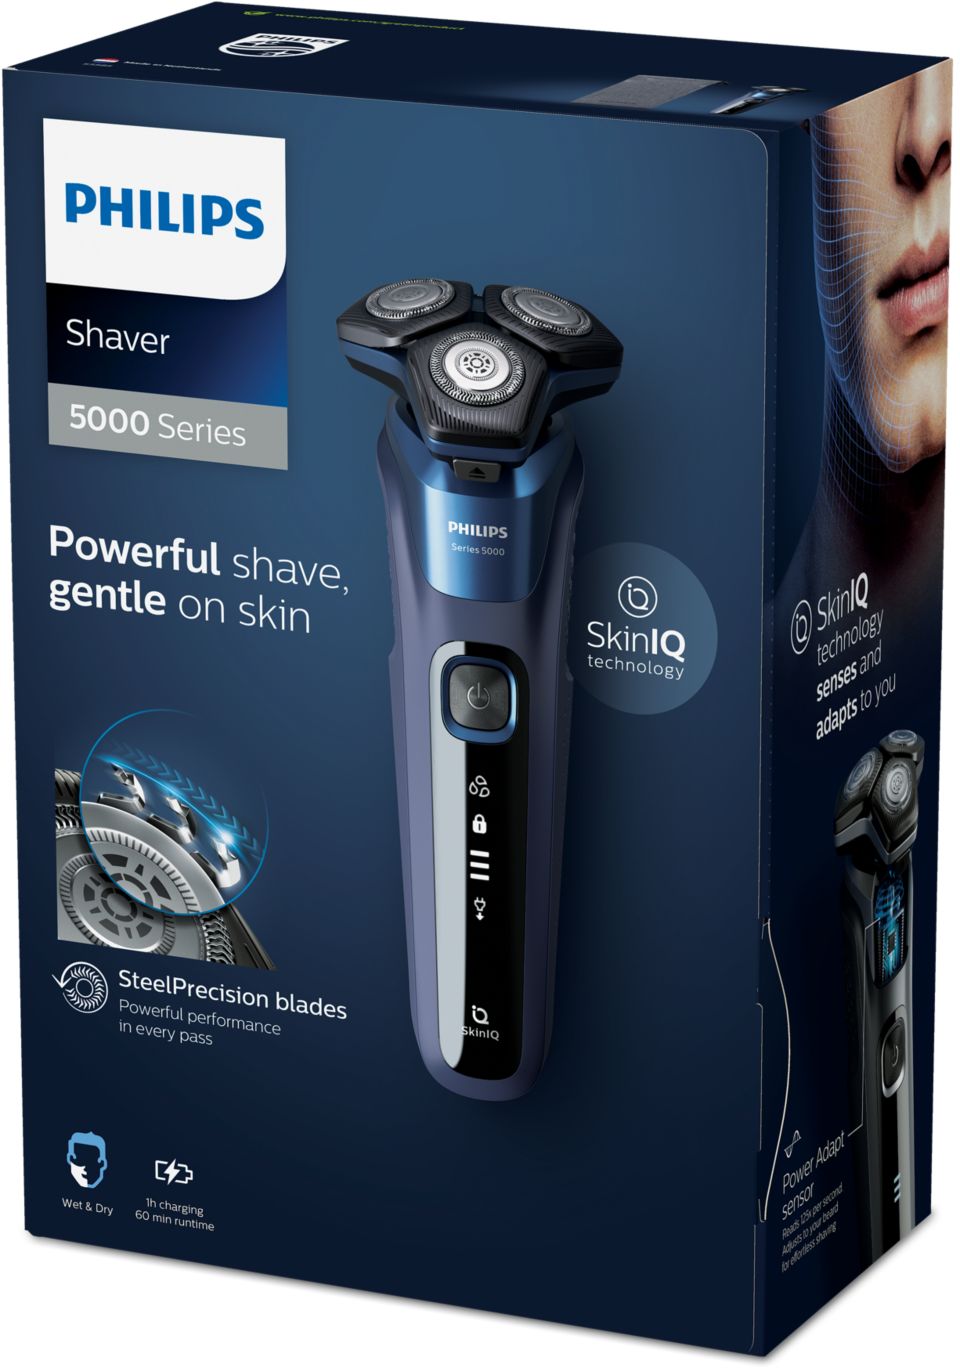 Beginner noot meesteres Shaver series 5000 Elektrisch scheerapparaat voor nat en droog scheren  S5585/10 | Philips